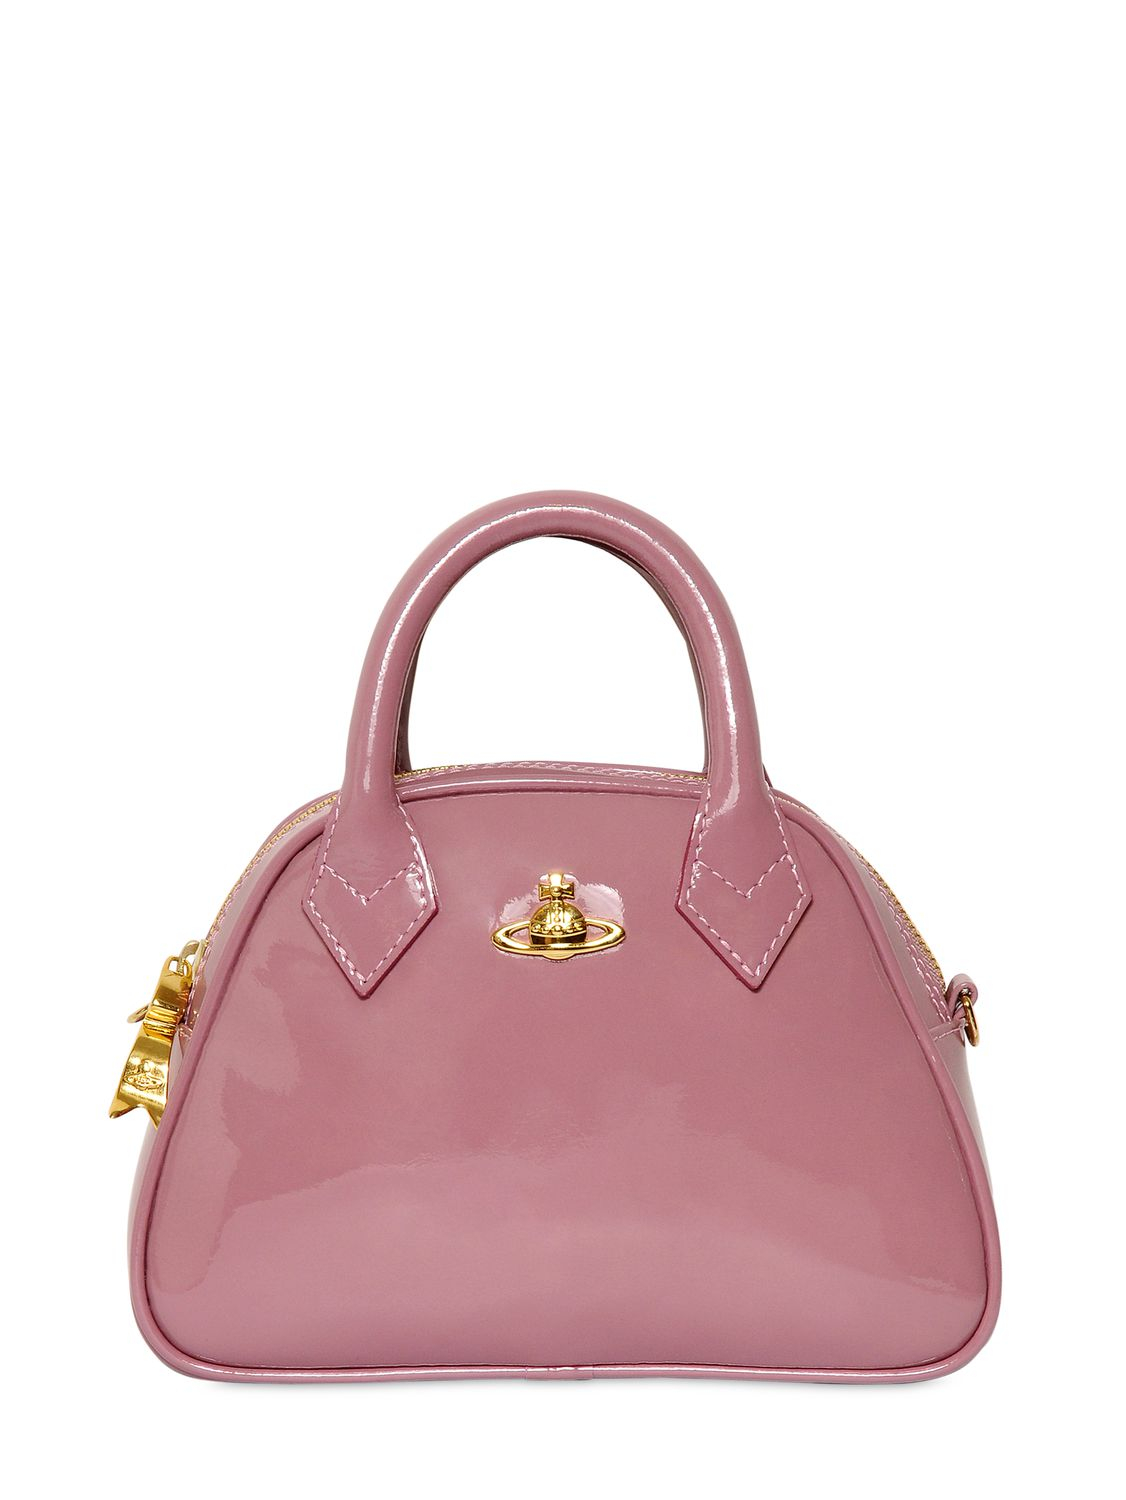 Vivienne Westwood Patent Leather Shoulder Bag in Rose (Pink) - Lyst